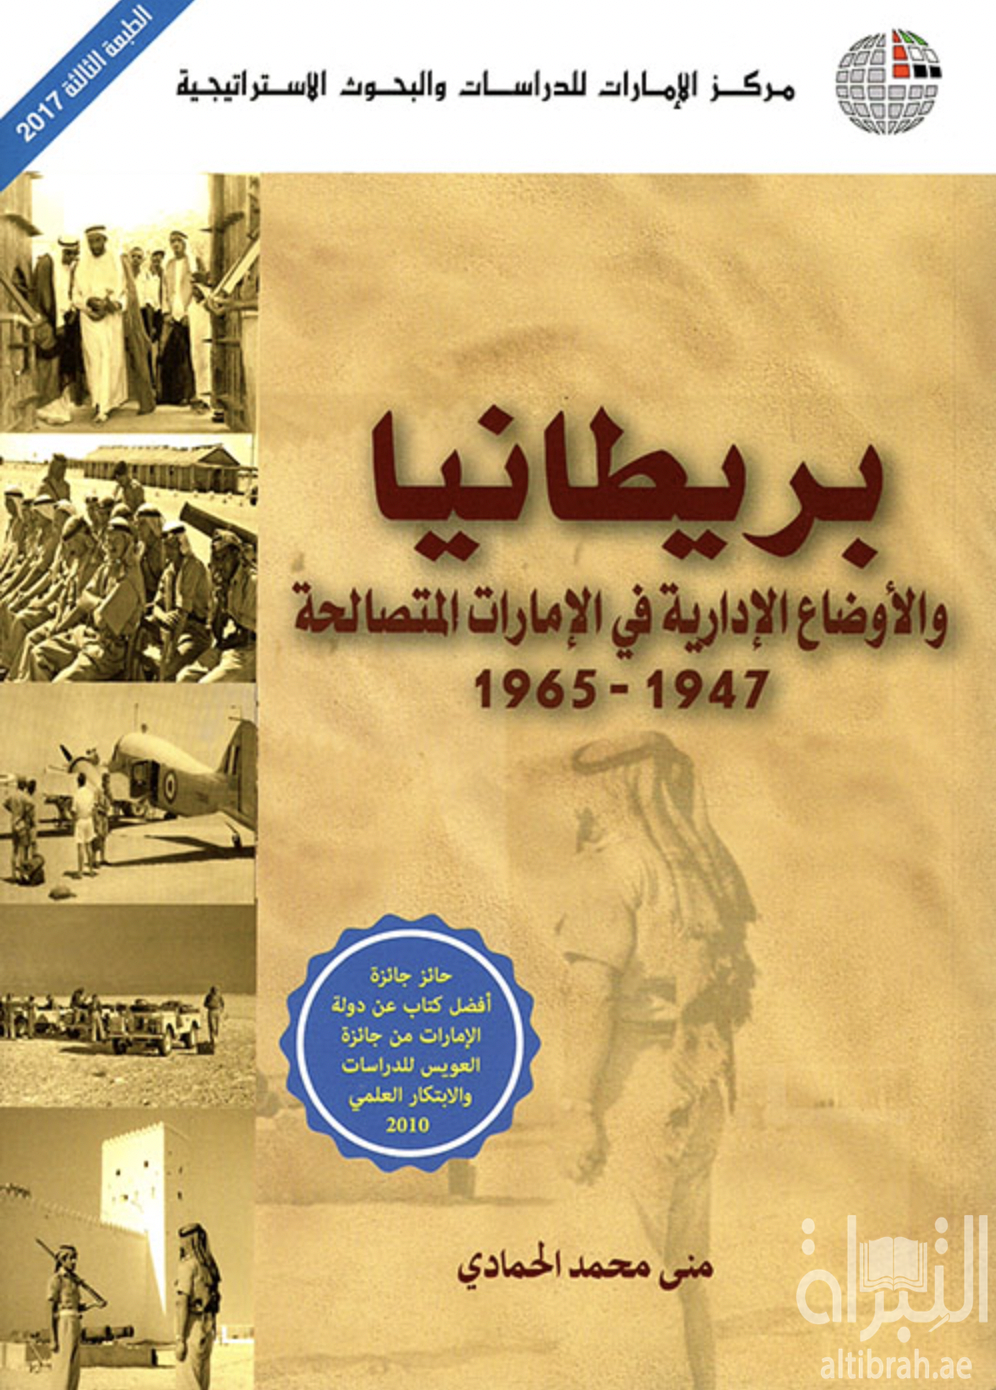 بريطانيا والأوضاع الإدارية في الإمارات المتصالحة 1947-1965